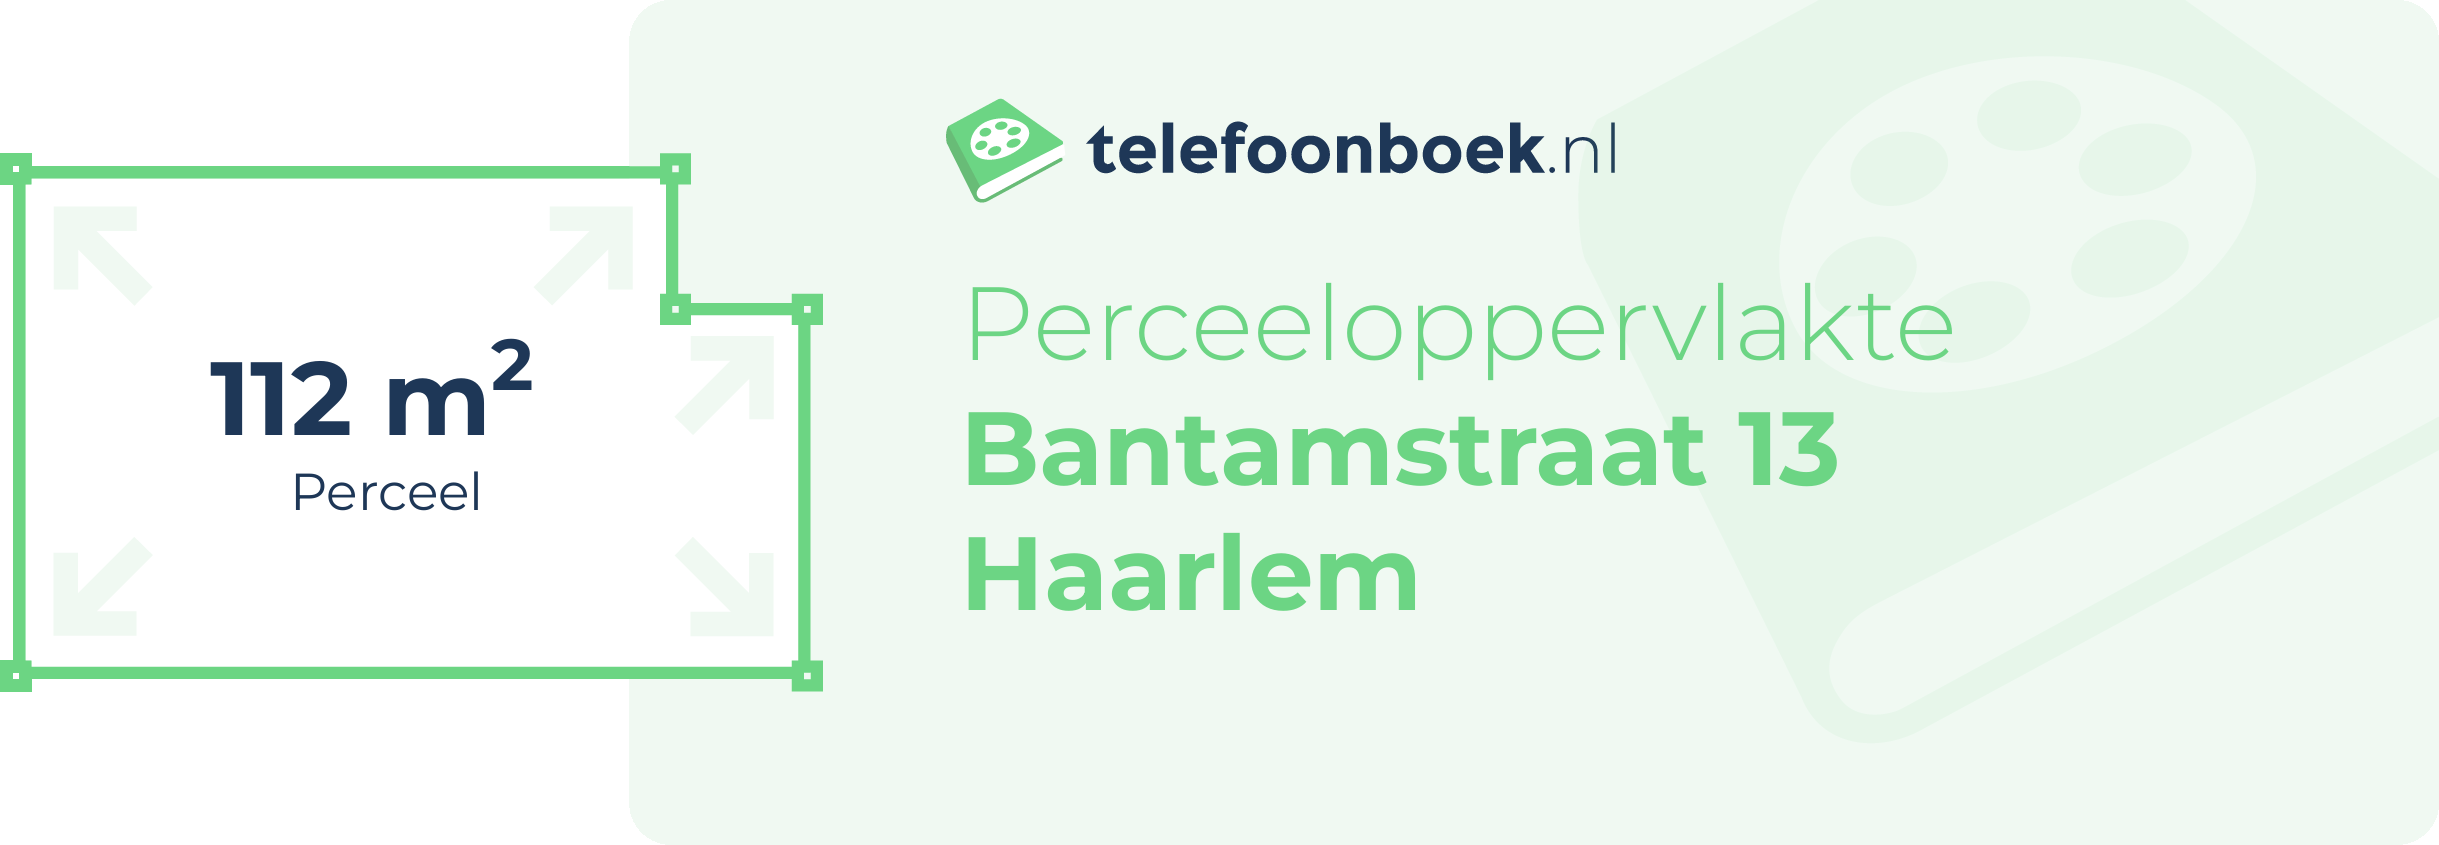 Perceeloppervlakte Bantamstraat 13 Haarlem